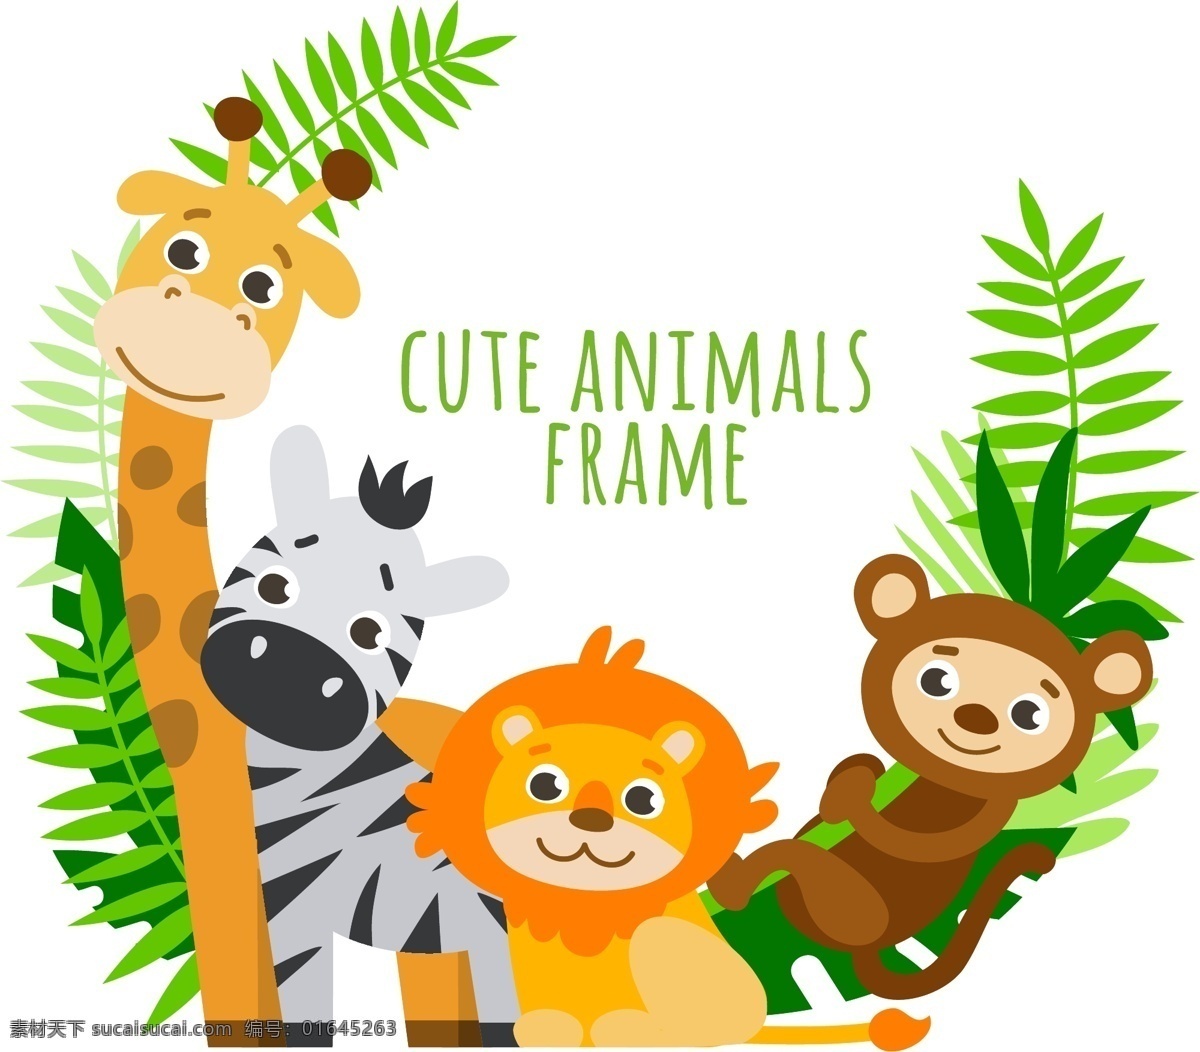 只 可爱 动物 棕榈 叶 可爱的动物 野生动物 叶子 树叶 猴子 狮子 斑马 长颈鹿 生物 动物园 卡通 卡通动物 卡通动画 卡通设计